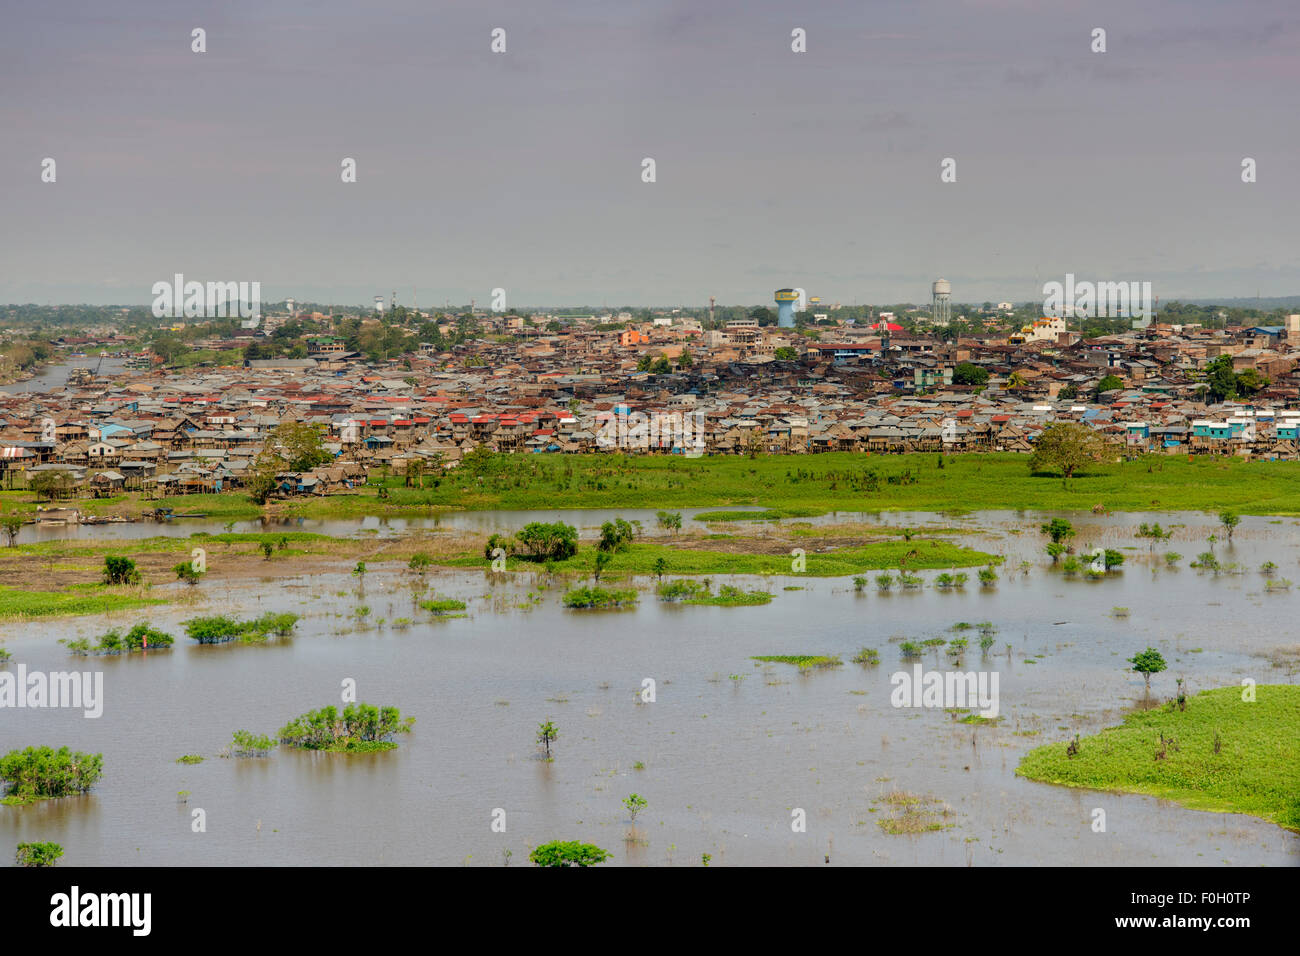 Iquitos aus der Luft auf dem Fluss Amazonas, Bezirk von Belen zeigt Aue  Itaya und Amazon Flüsse Perus Stockfotografie - Alamy